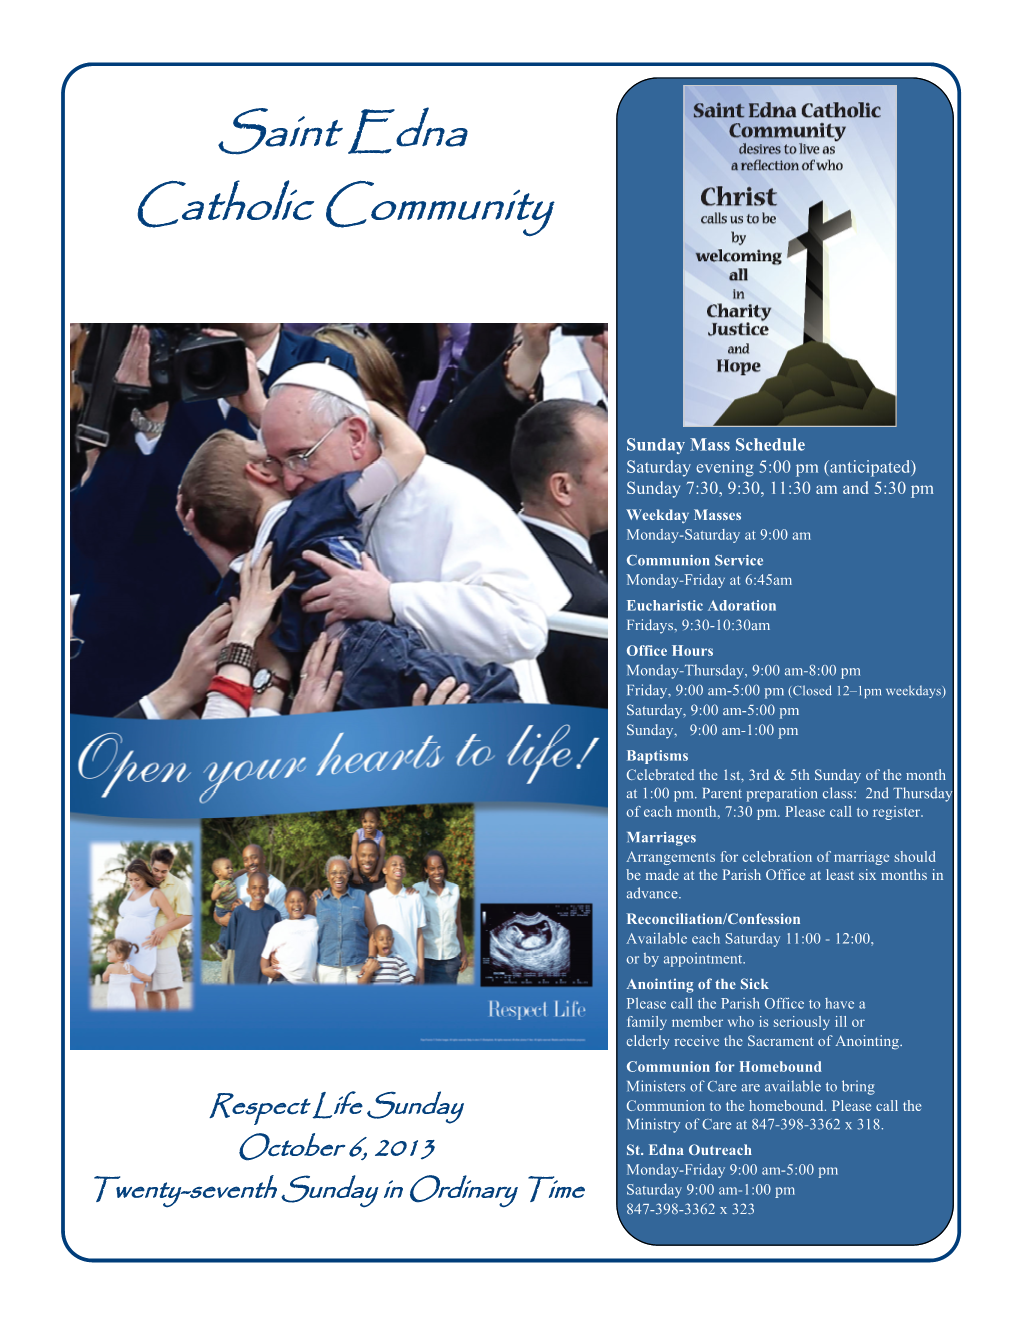 Saint Edna Catholic Community